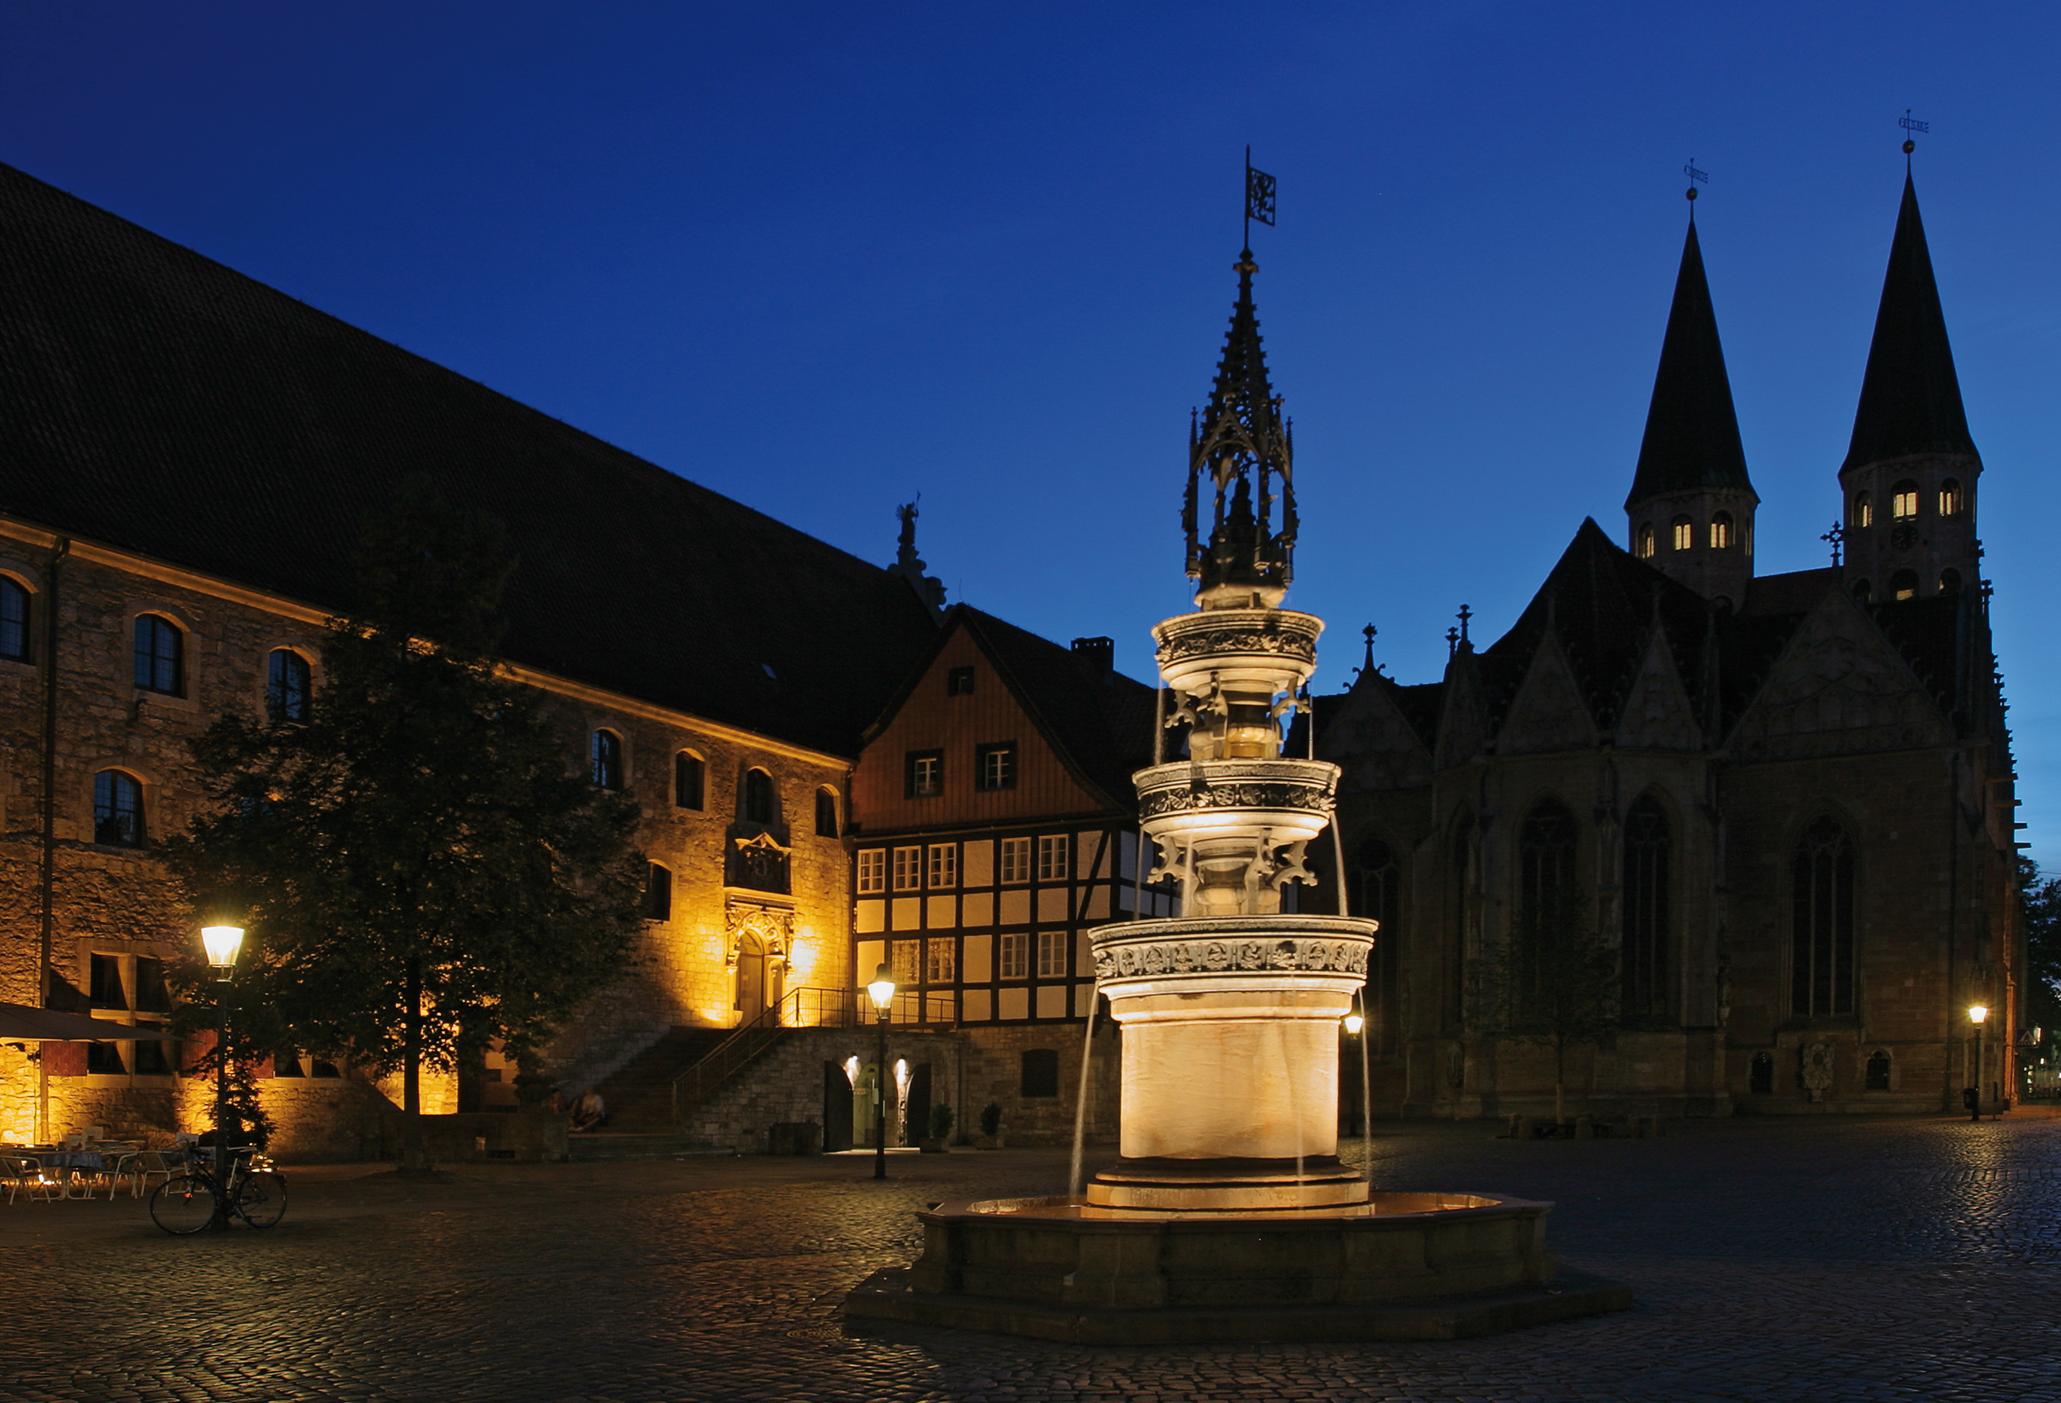 Der Altstadtmarkt von Braunschweig bei Nacht mit Marienbrunnen.
